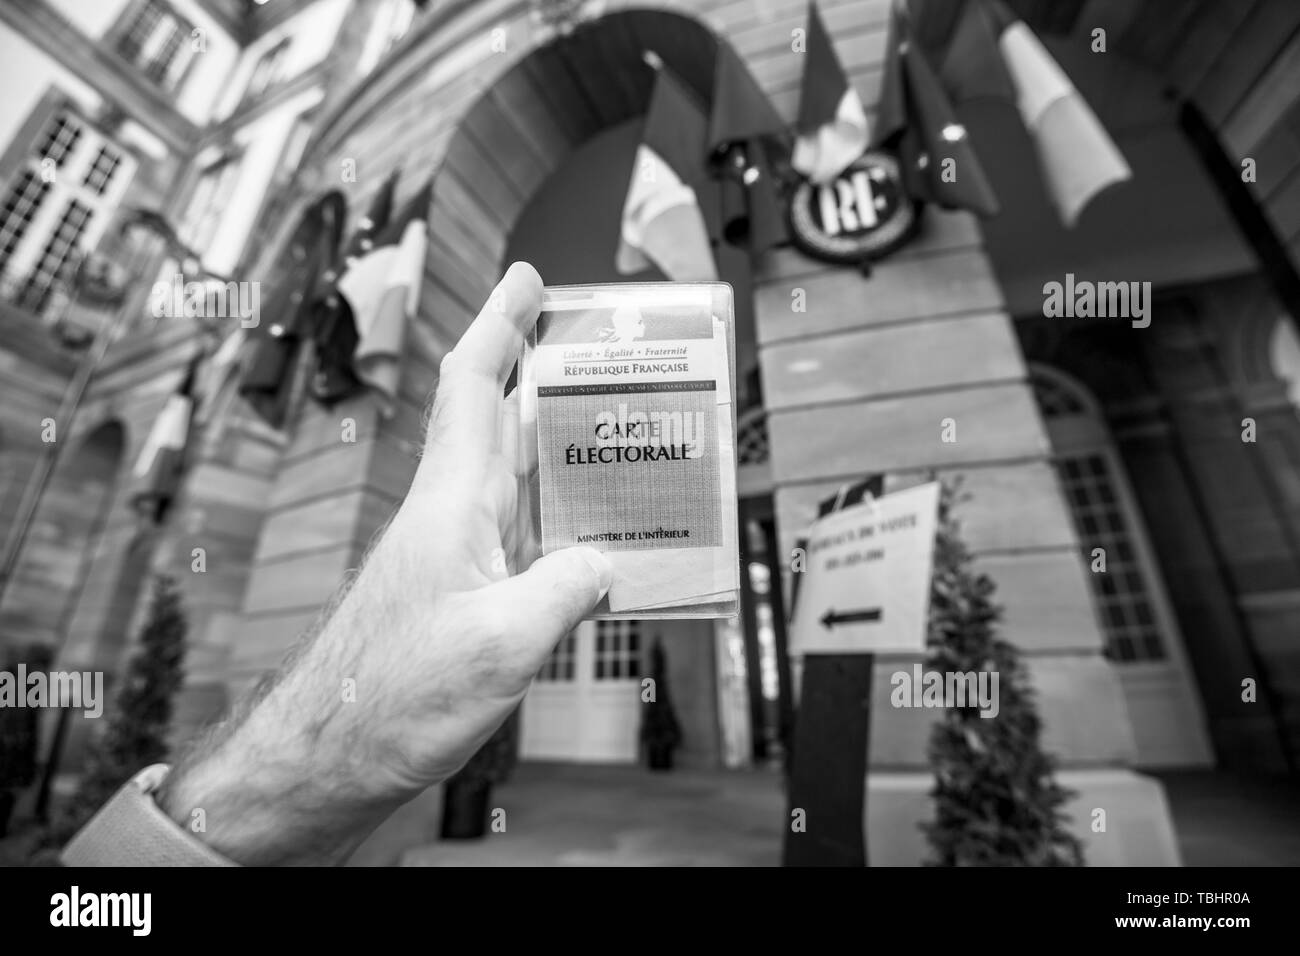 Strasbourg, France - 26 mai 2019 : image de l'homme main tenant l'électeur français voiture Carte Electorale avec l'entrée de l'Hôtel de Ville Hôtel de Ville bureau de vote sur le jour de l'élection du Parlement européen 2019 - noir et blanc Banque D'Images